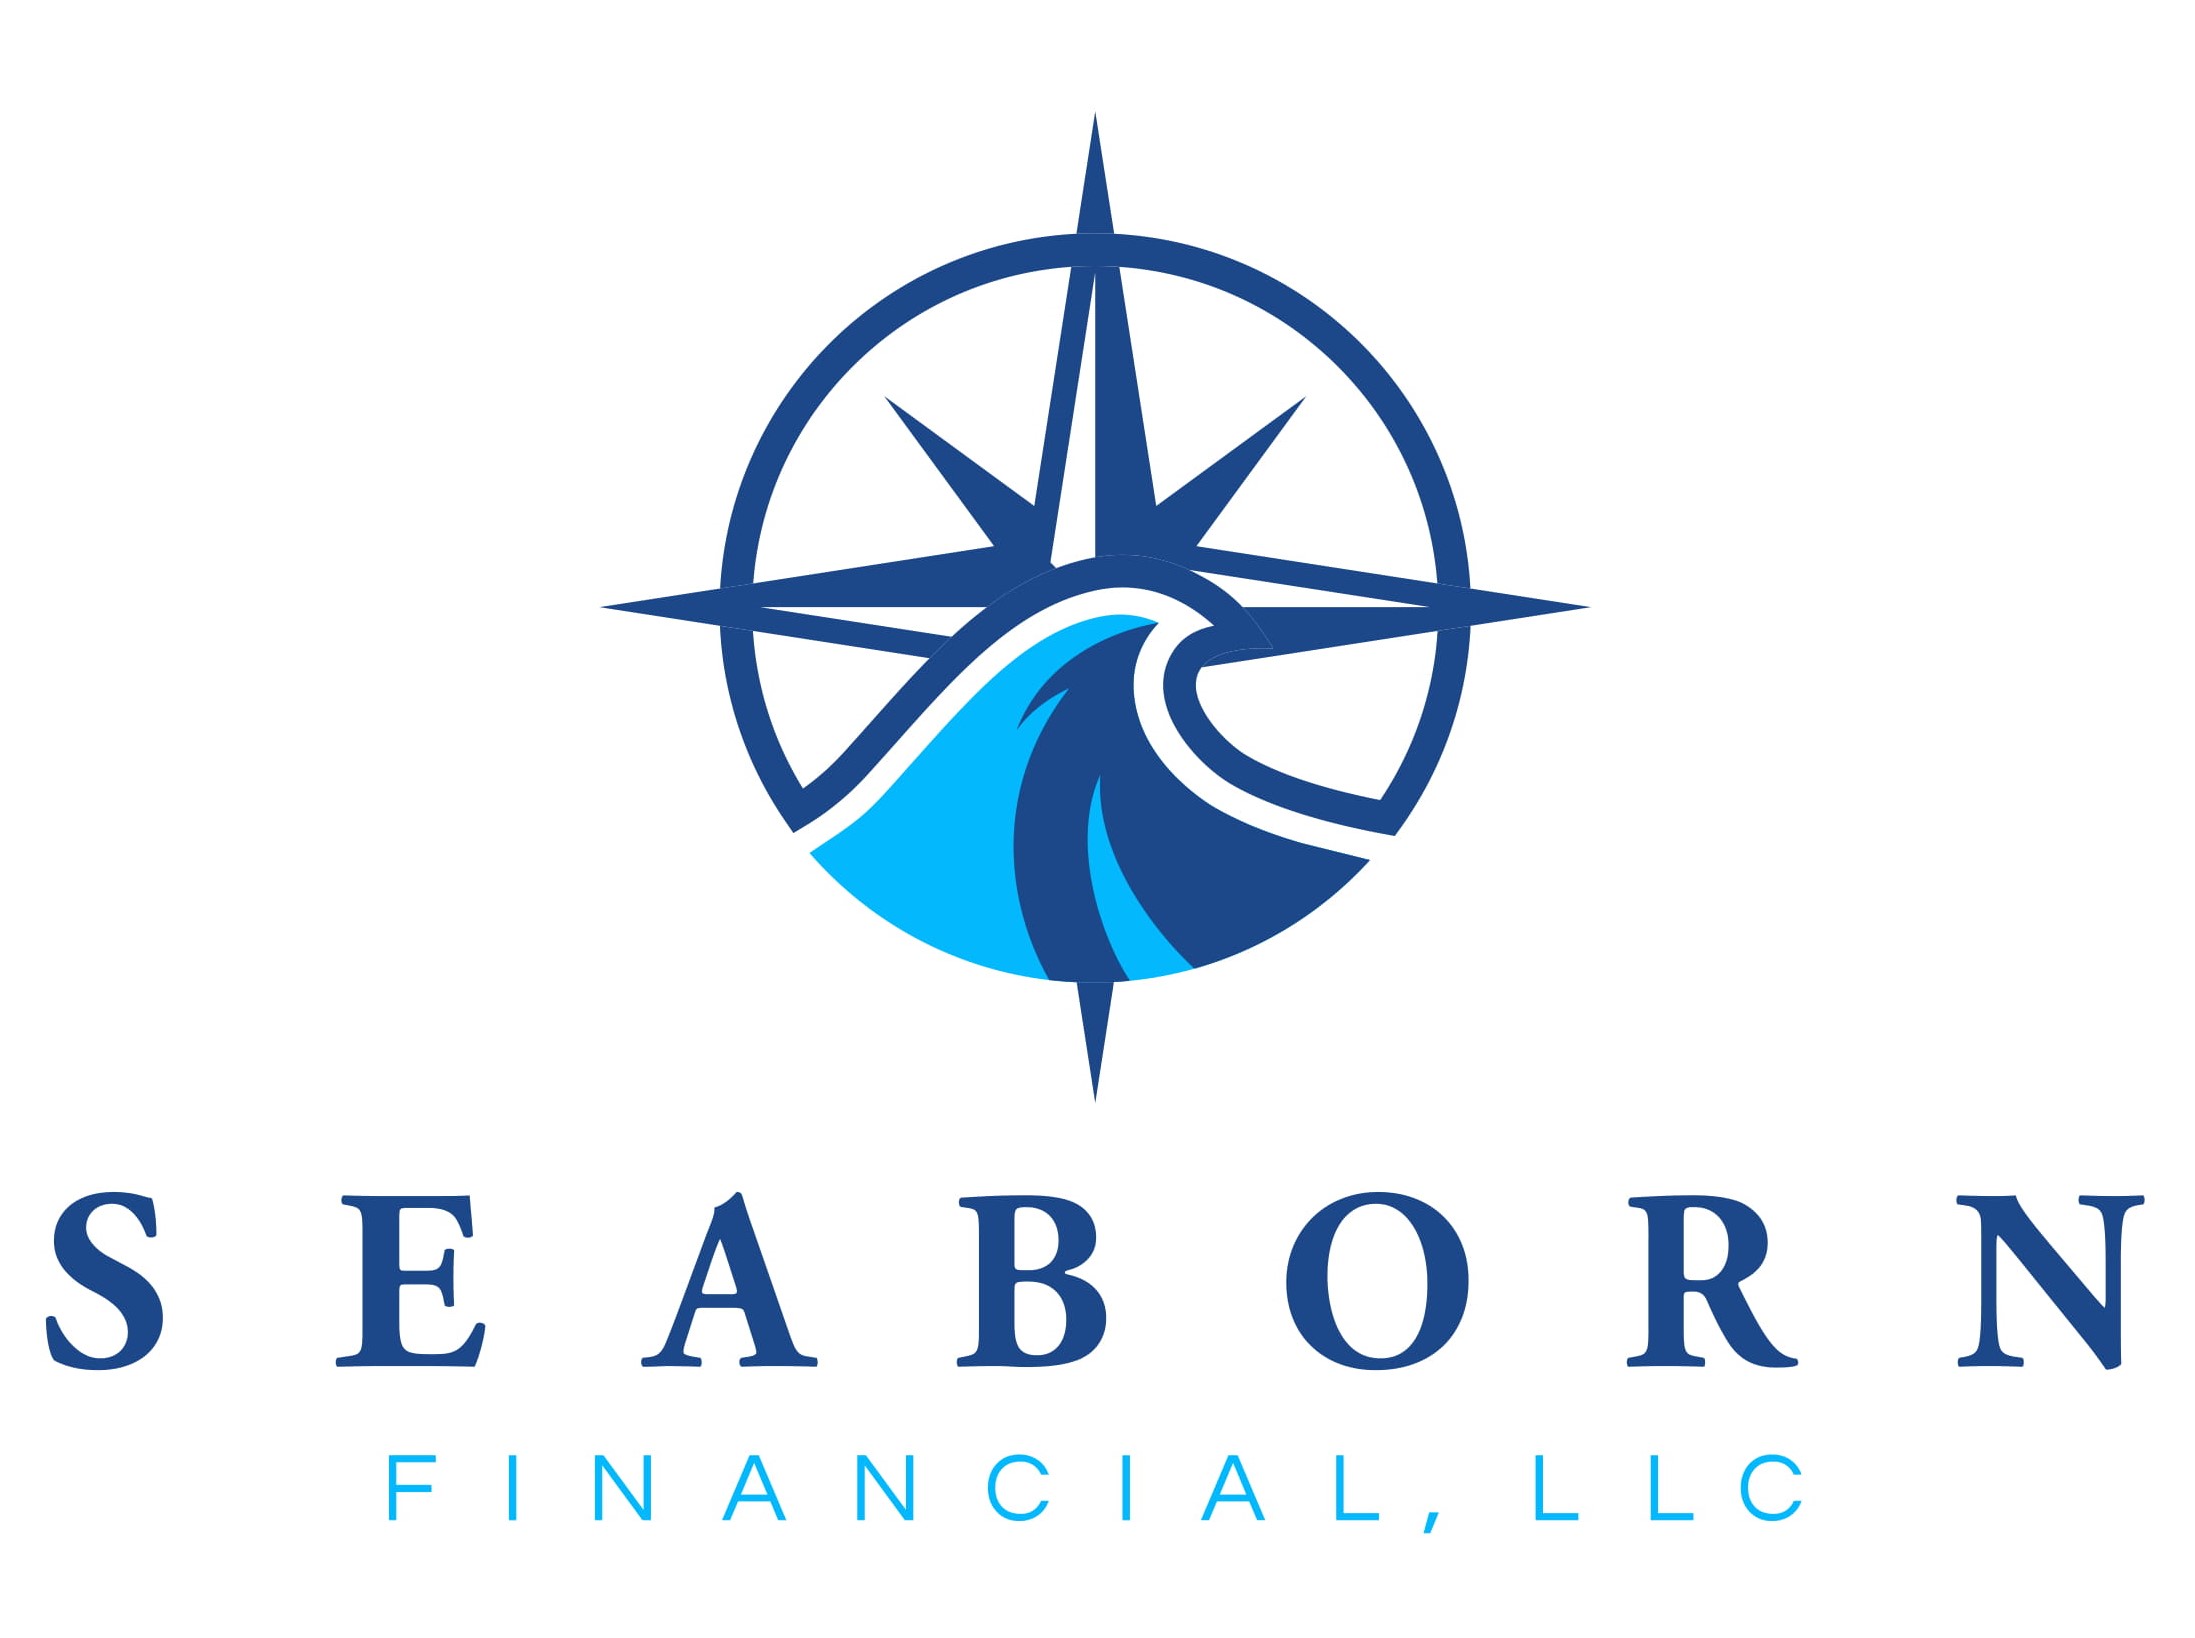 Seaborn Financial, LLC